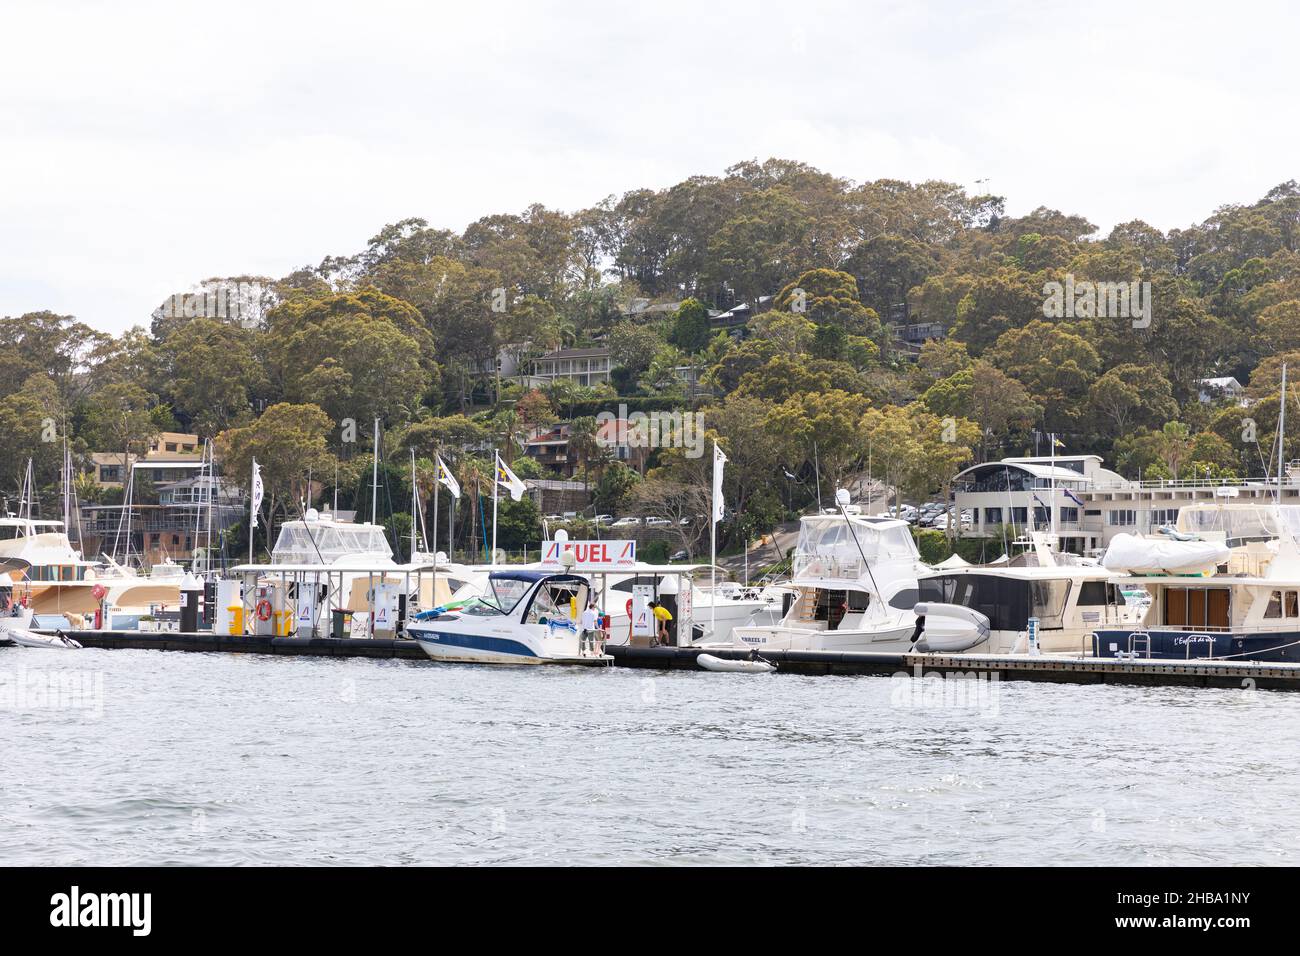 Il Royal Motor Yacht Club a Pittwater Sydney e una nave da crociera ferma al molo per aggiungere benzina alla barca, Australia Foto Stock